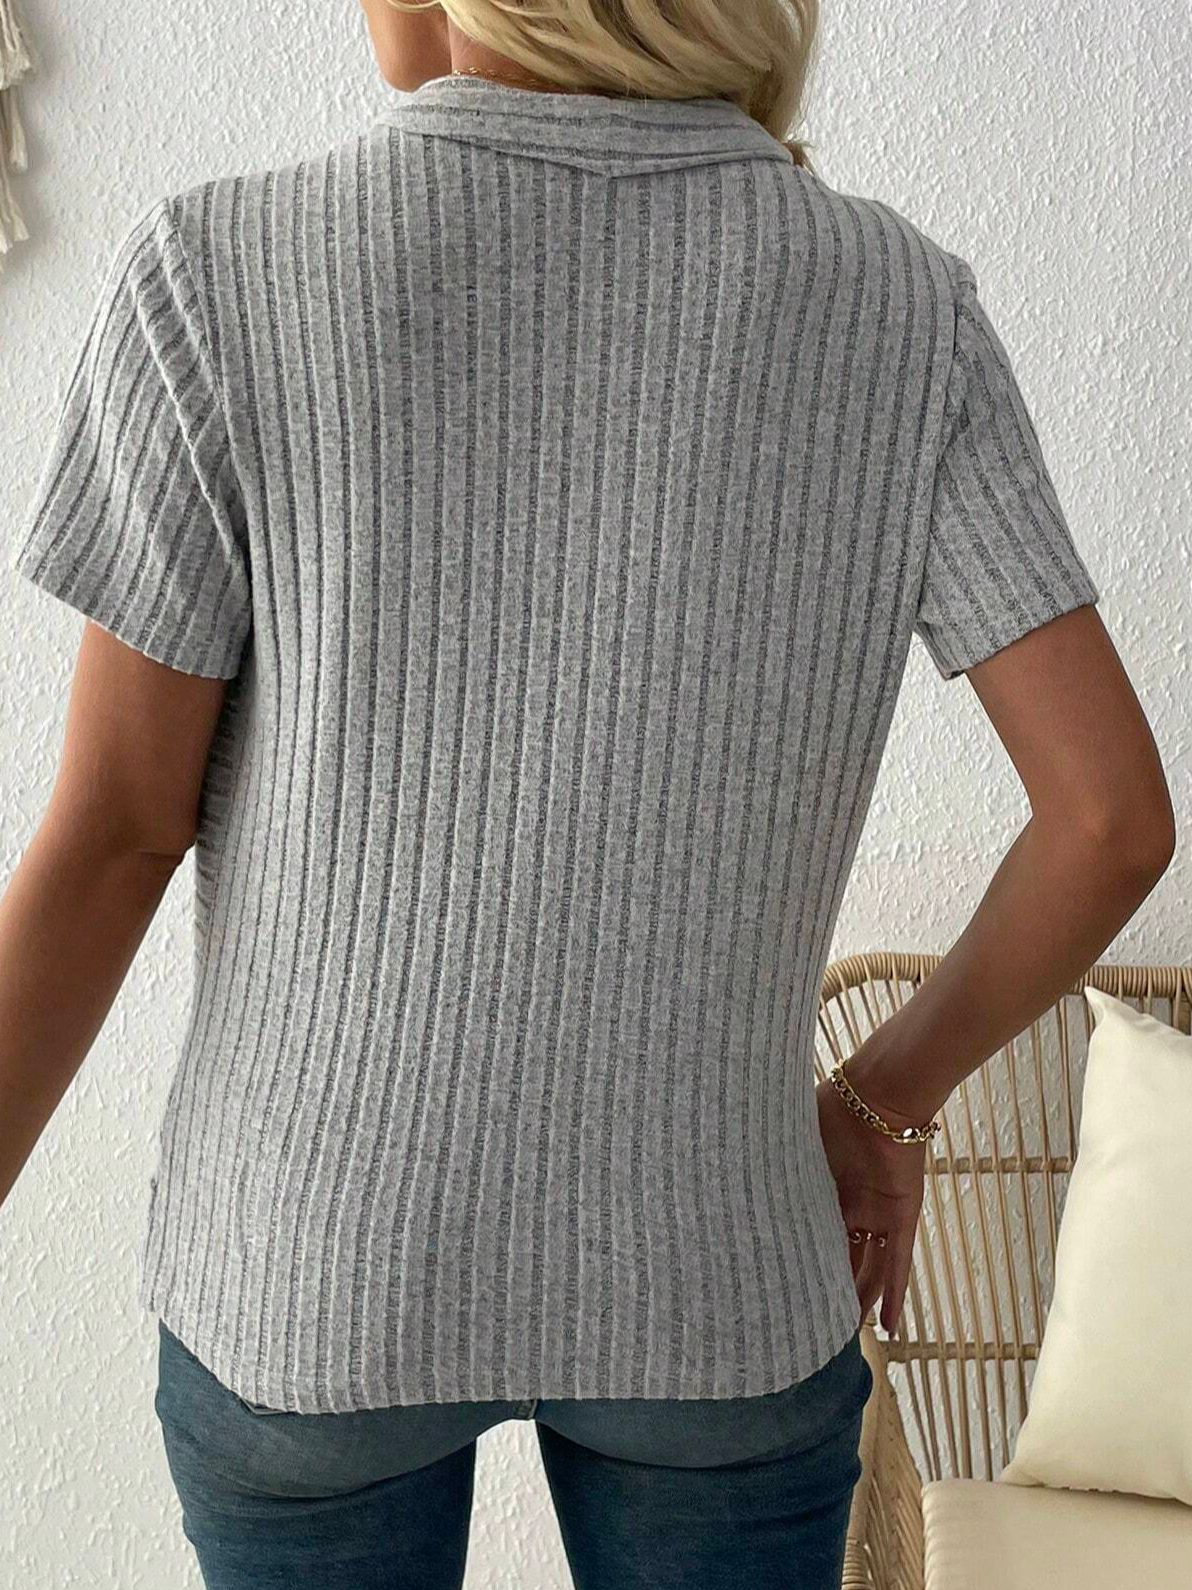 Lässig Baumwollmischung Weit Gestreift Unifarben Criss Cross Wickeln Gerippt Stricken T-Shirt